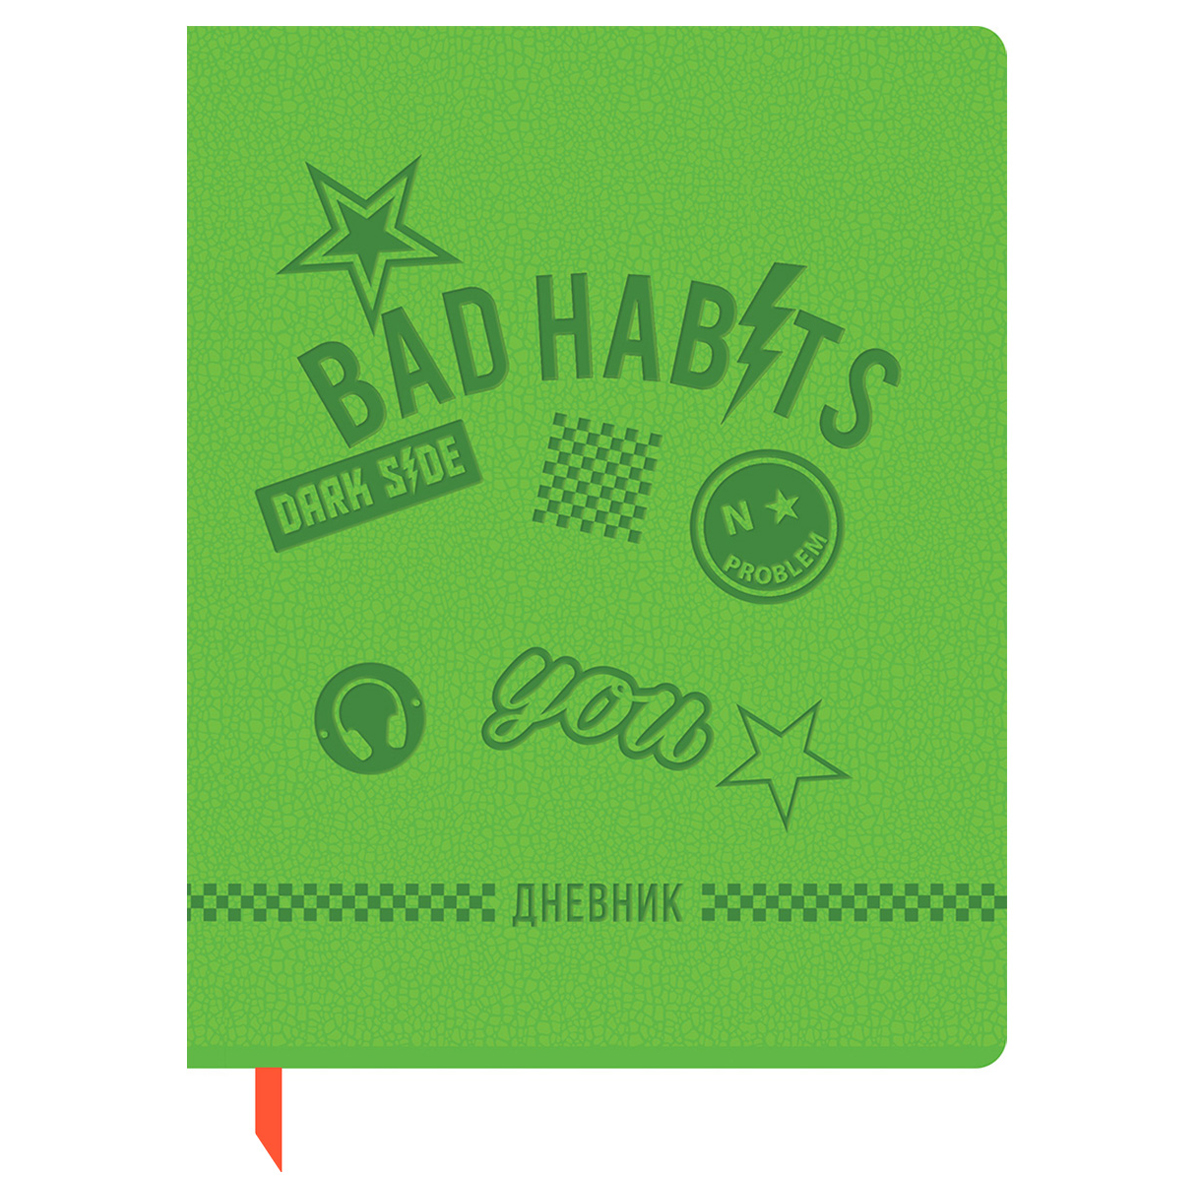  1-11 . 48.  BG "Bad habits", . , ,  